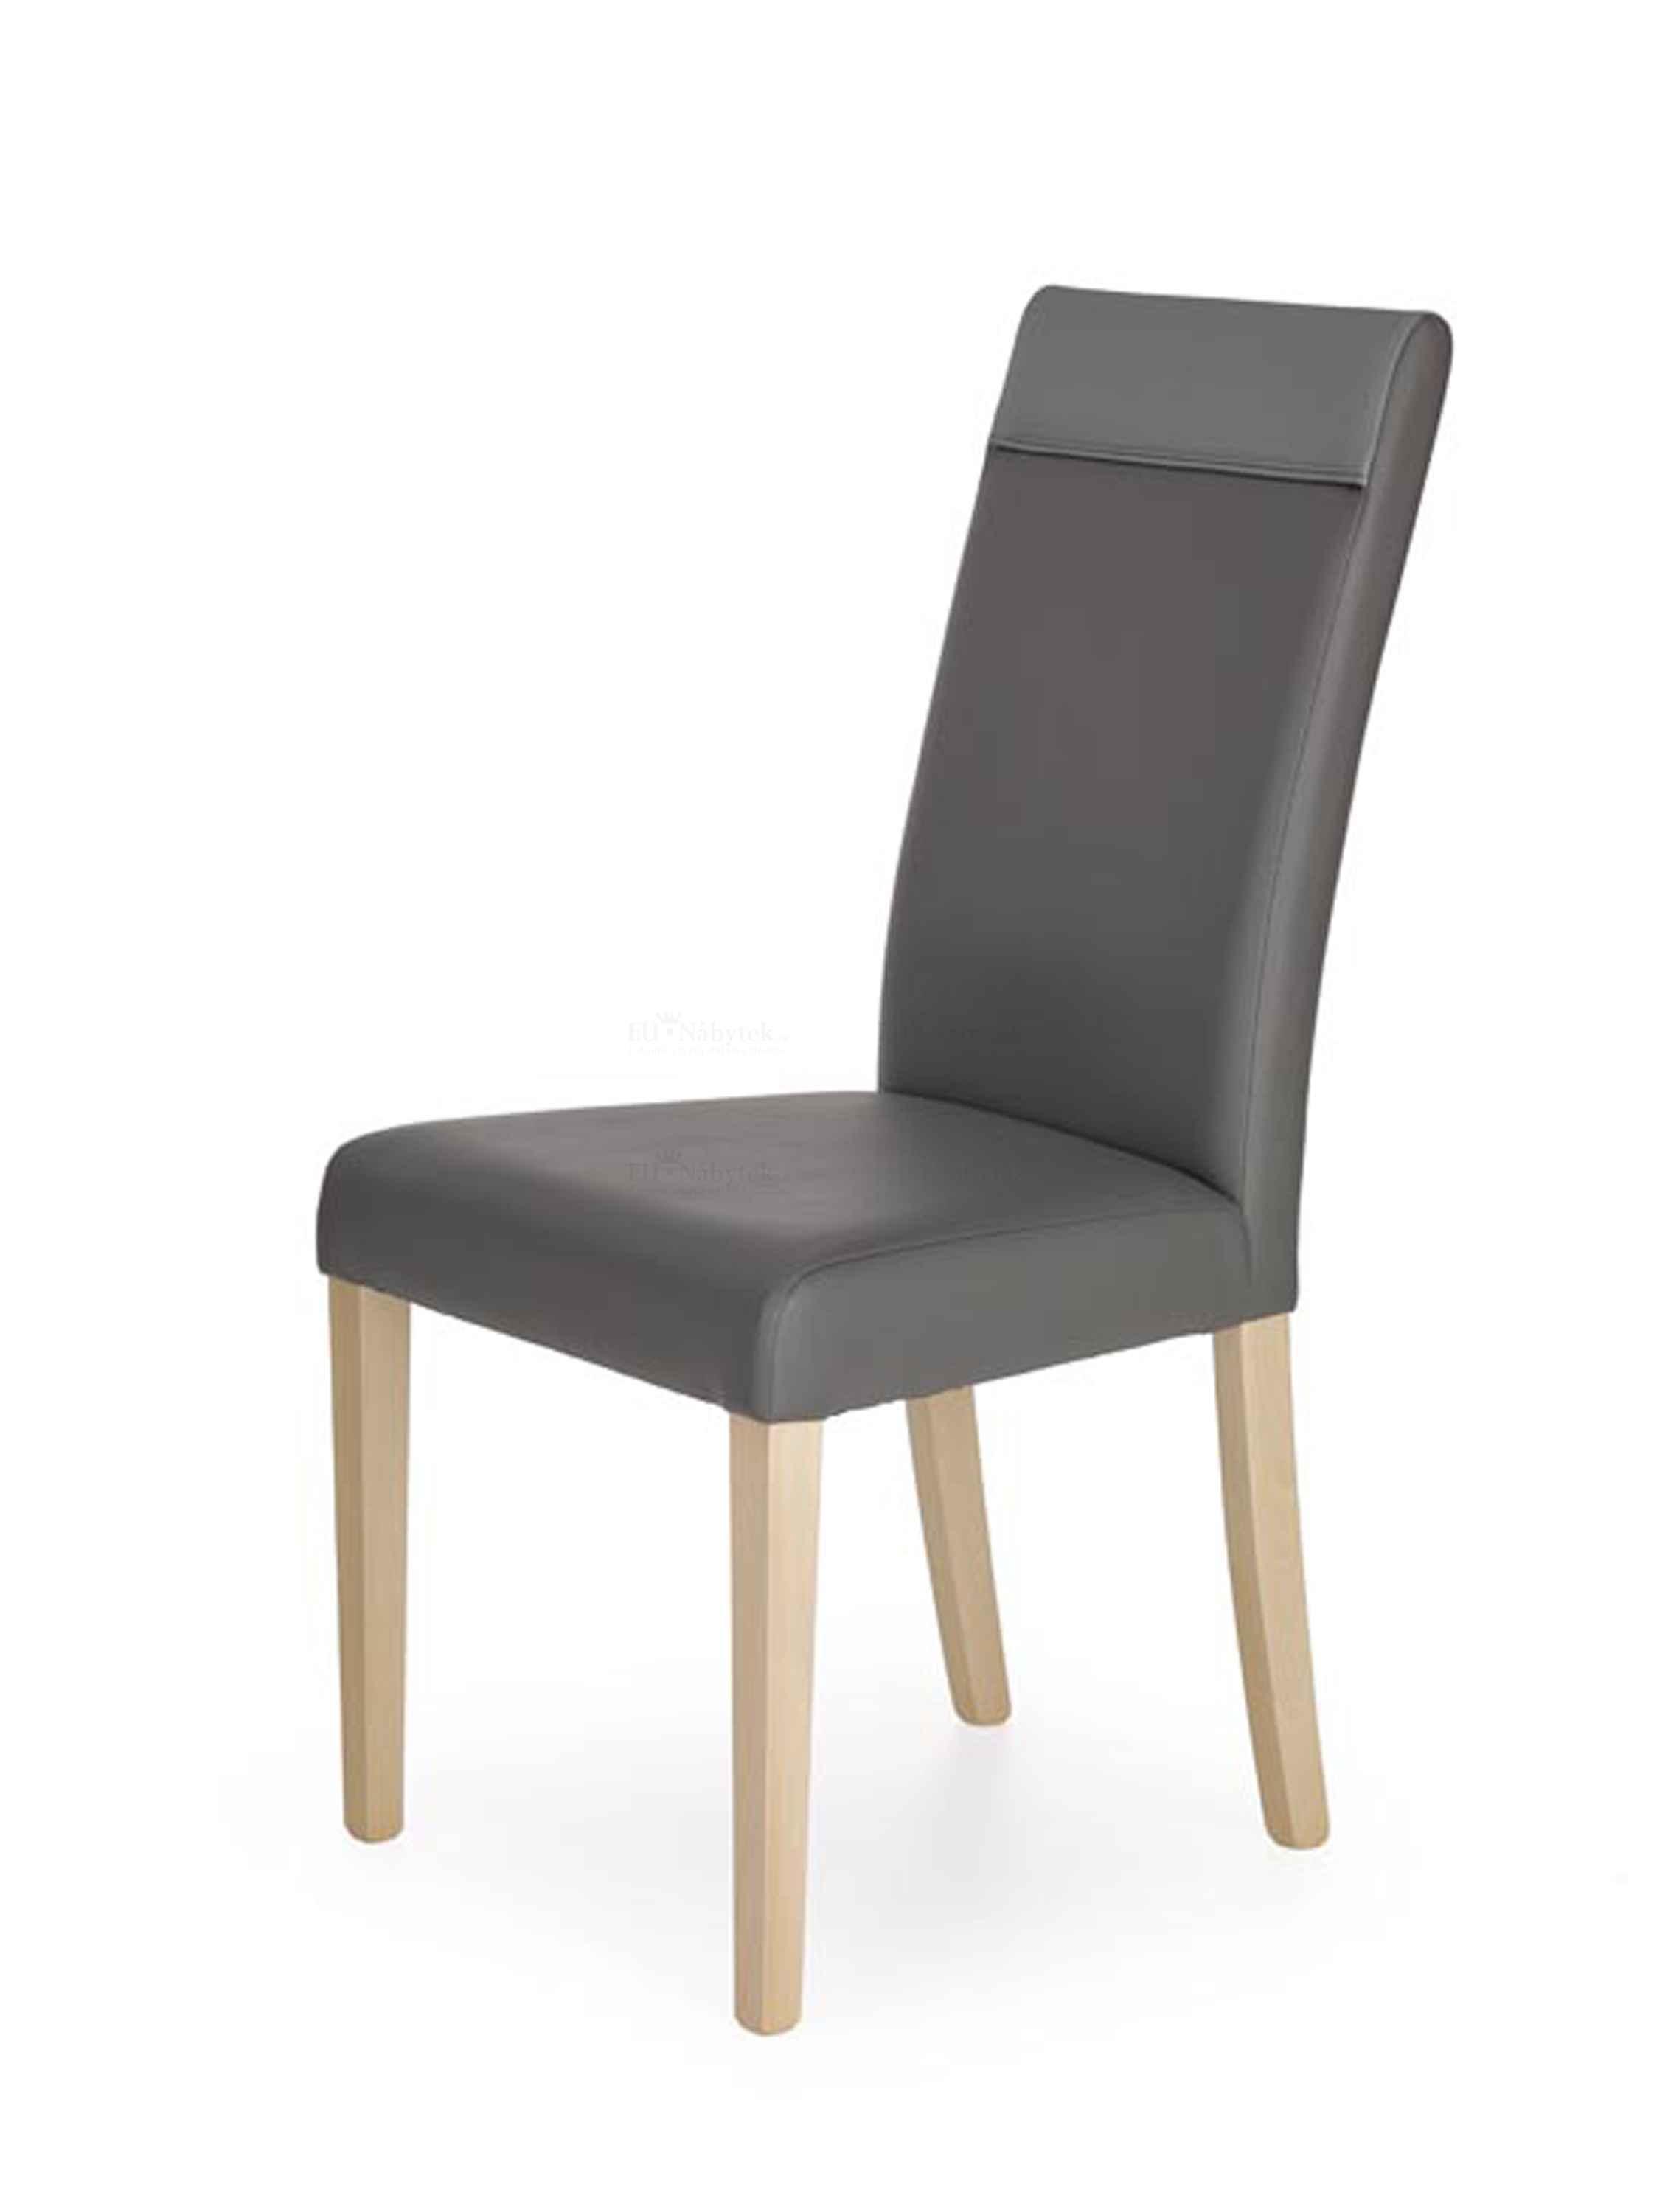 Jídelní židle NORA dub sonoma/šedá